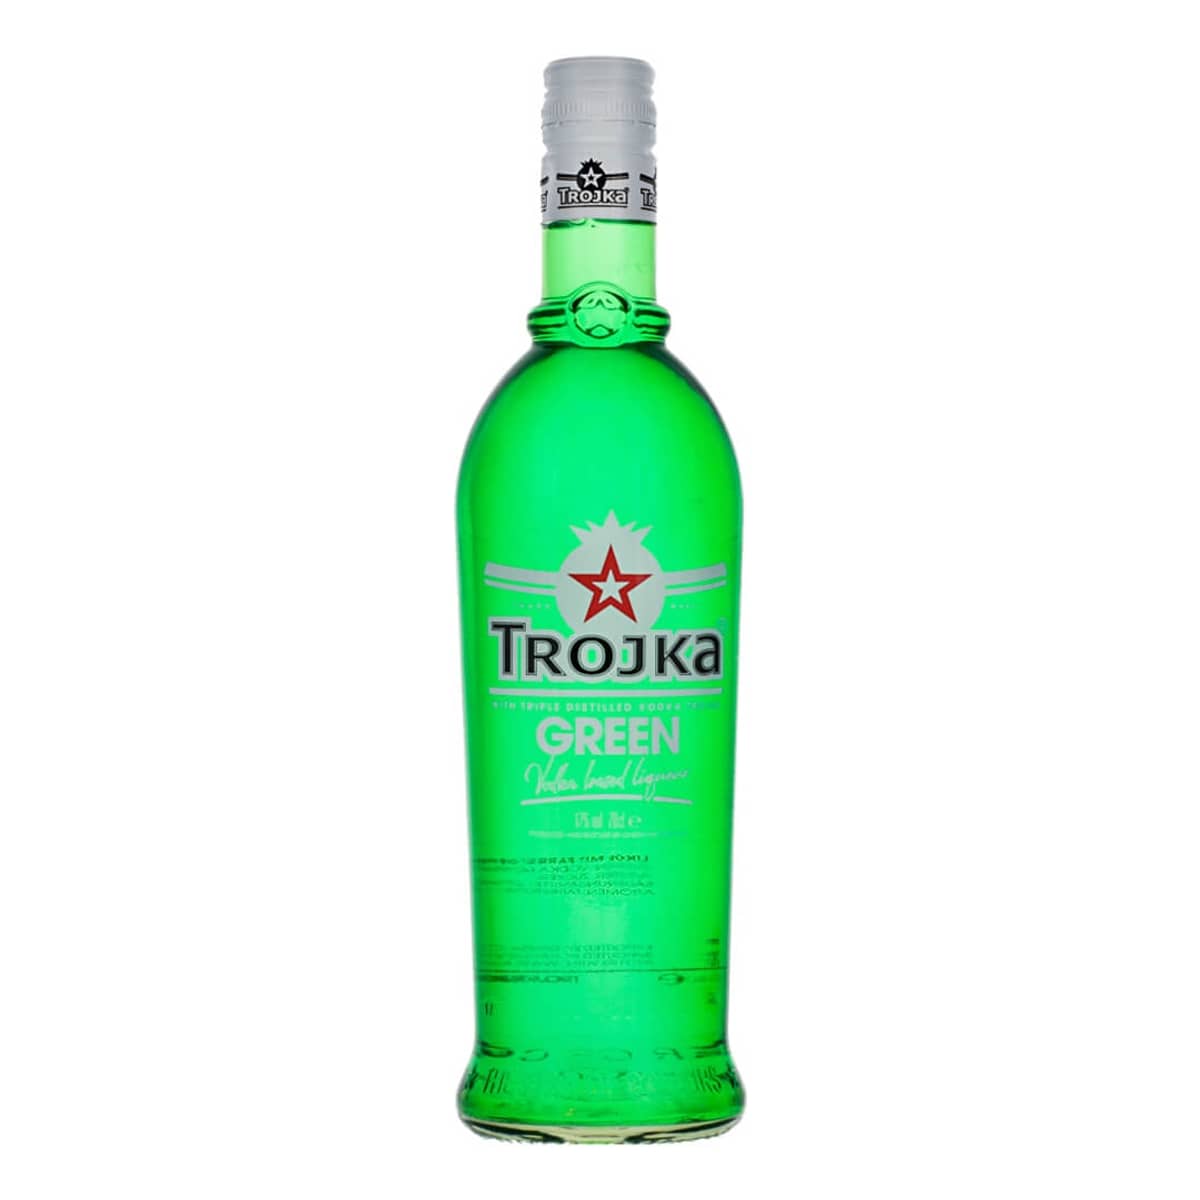 trojka green